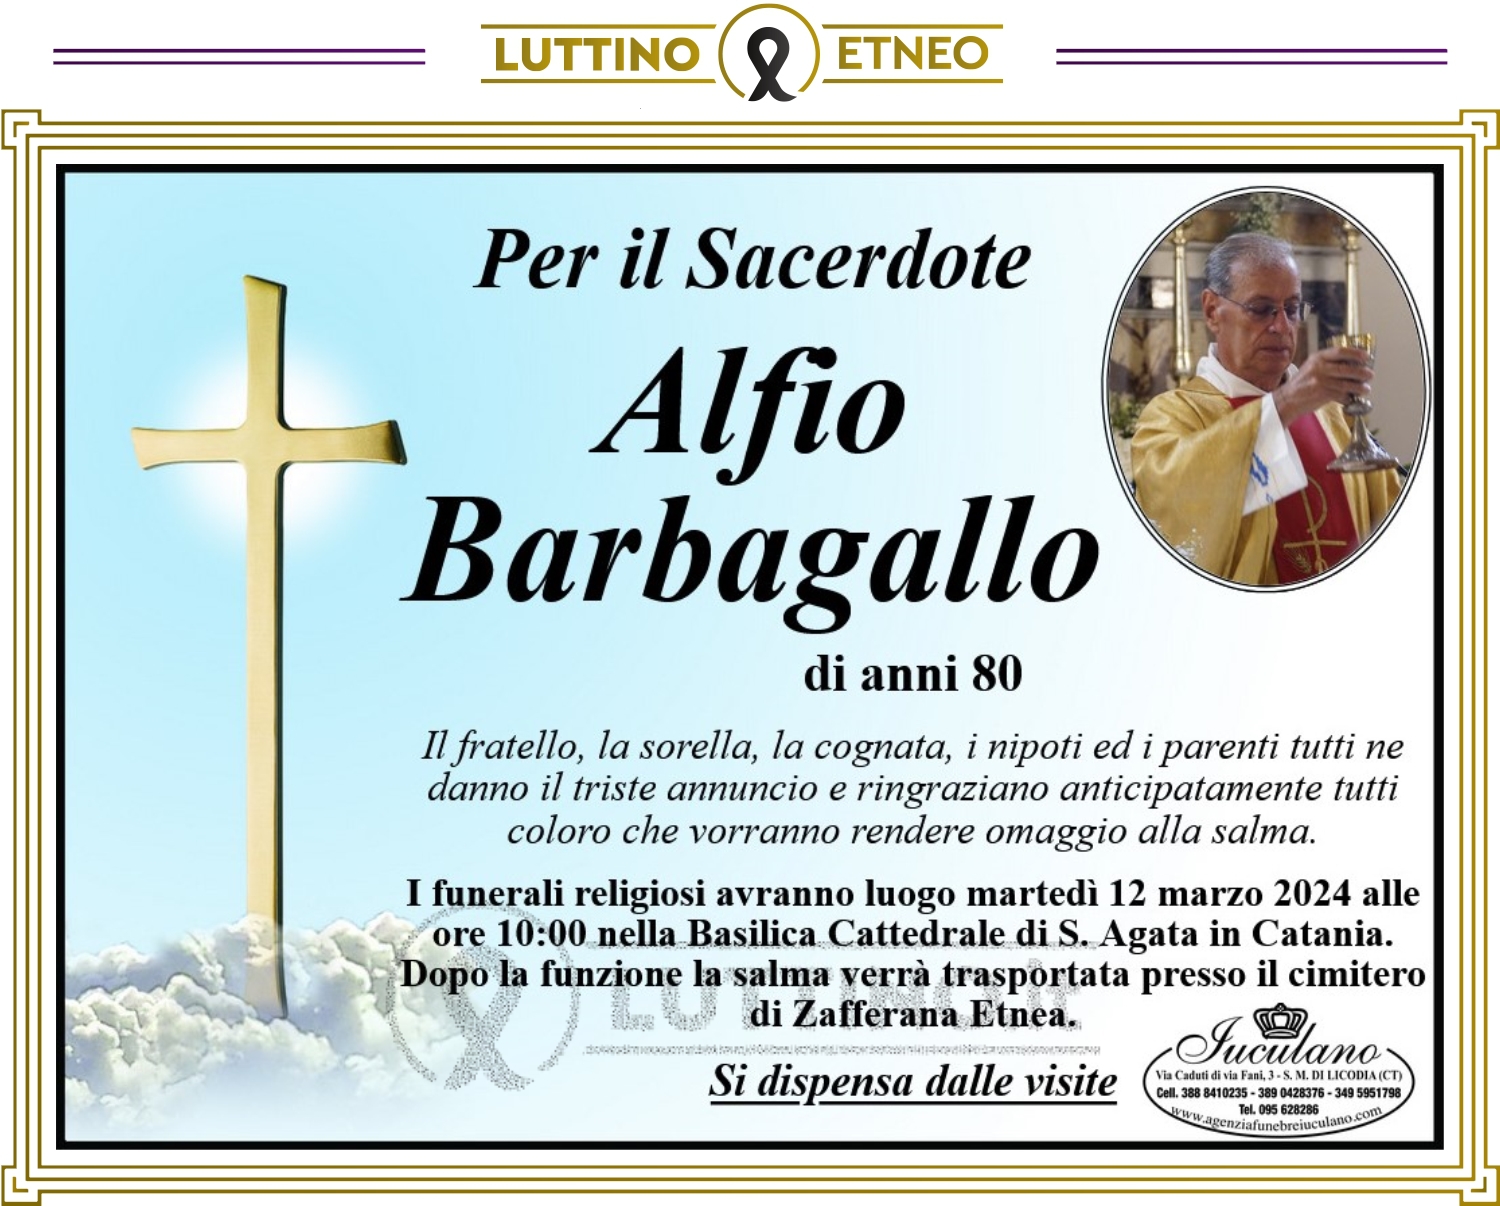 Padre Alfio Barbagallo